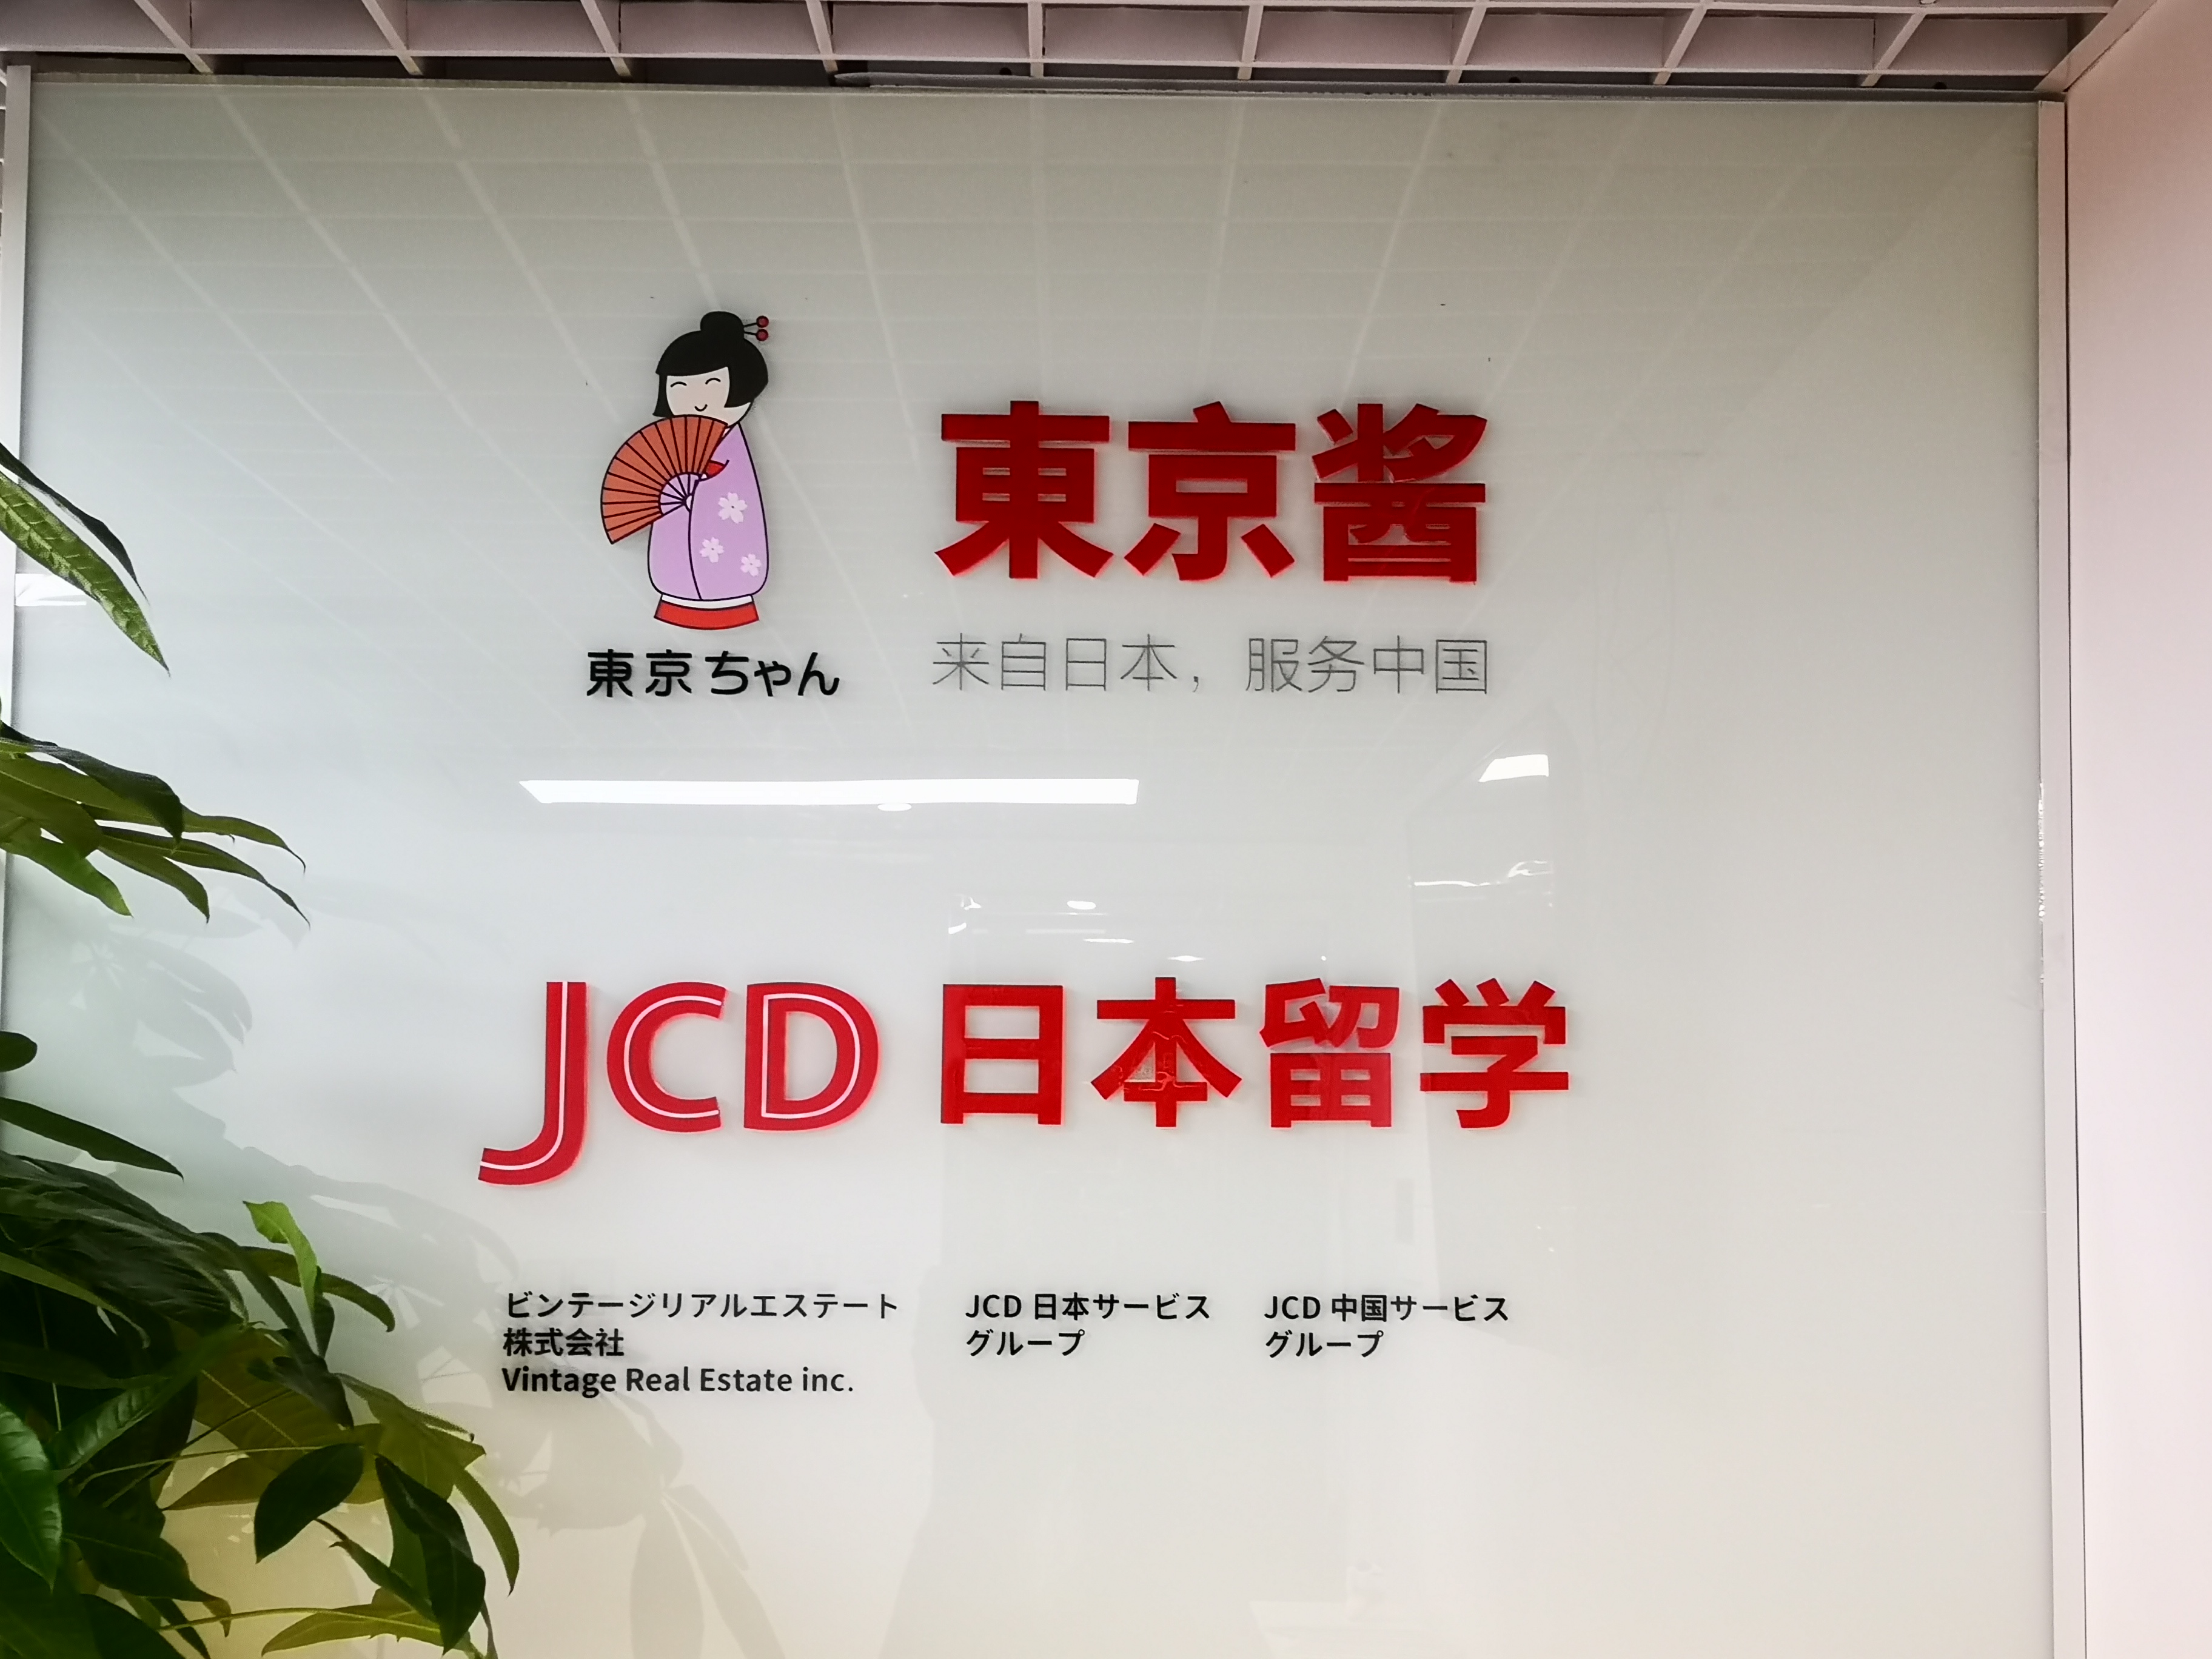 上海JCD杰斯蒂日本留学